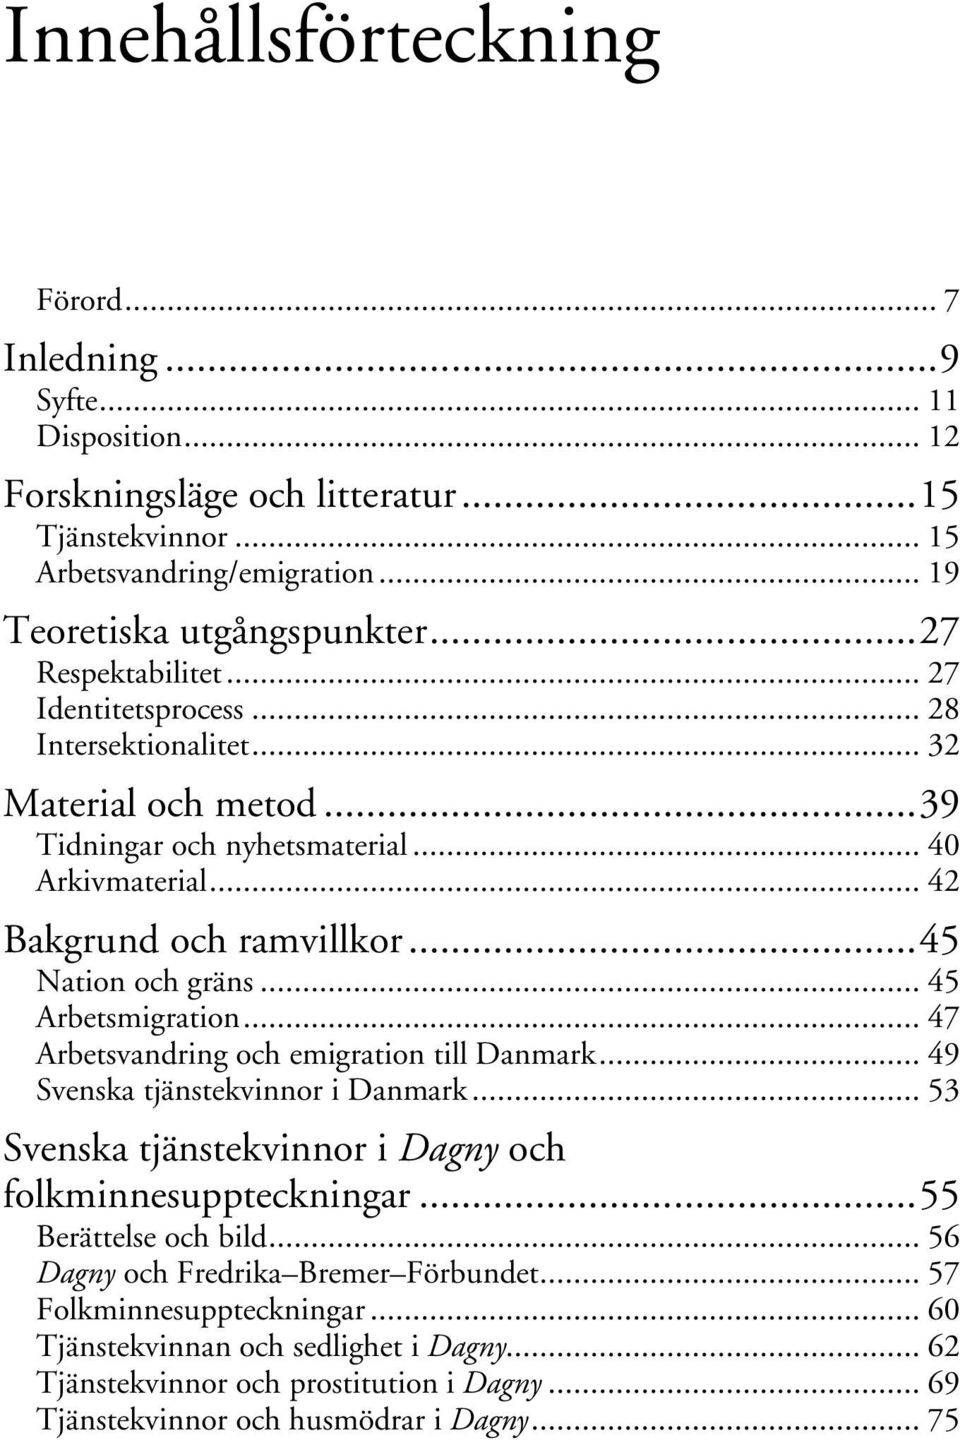 .. 45 Nation och gräns... 45 Arbetsmigration... 47 Arbetsvandring och emigration till Danmark... 49 Svenska tjänstekvinnor i Danmark... 53 Svenska tjänstekvinnor i Dagny och folkminnesuppteckningar.